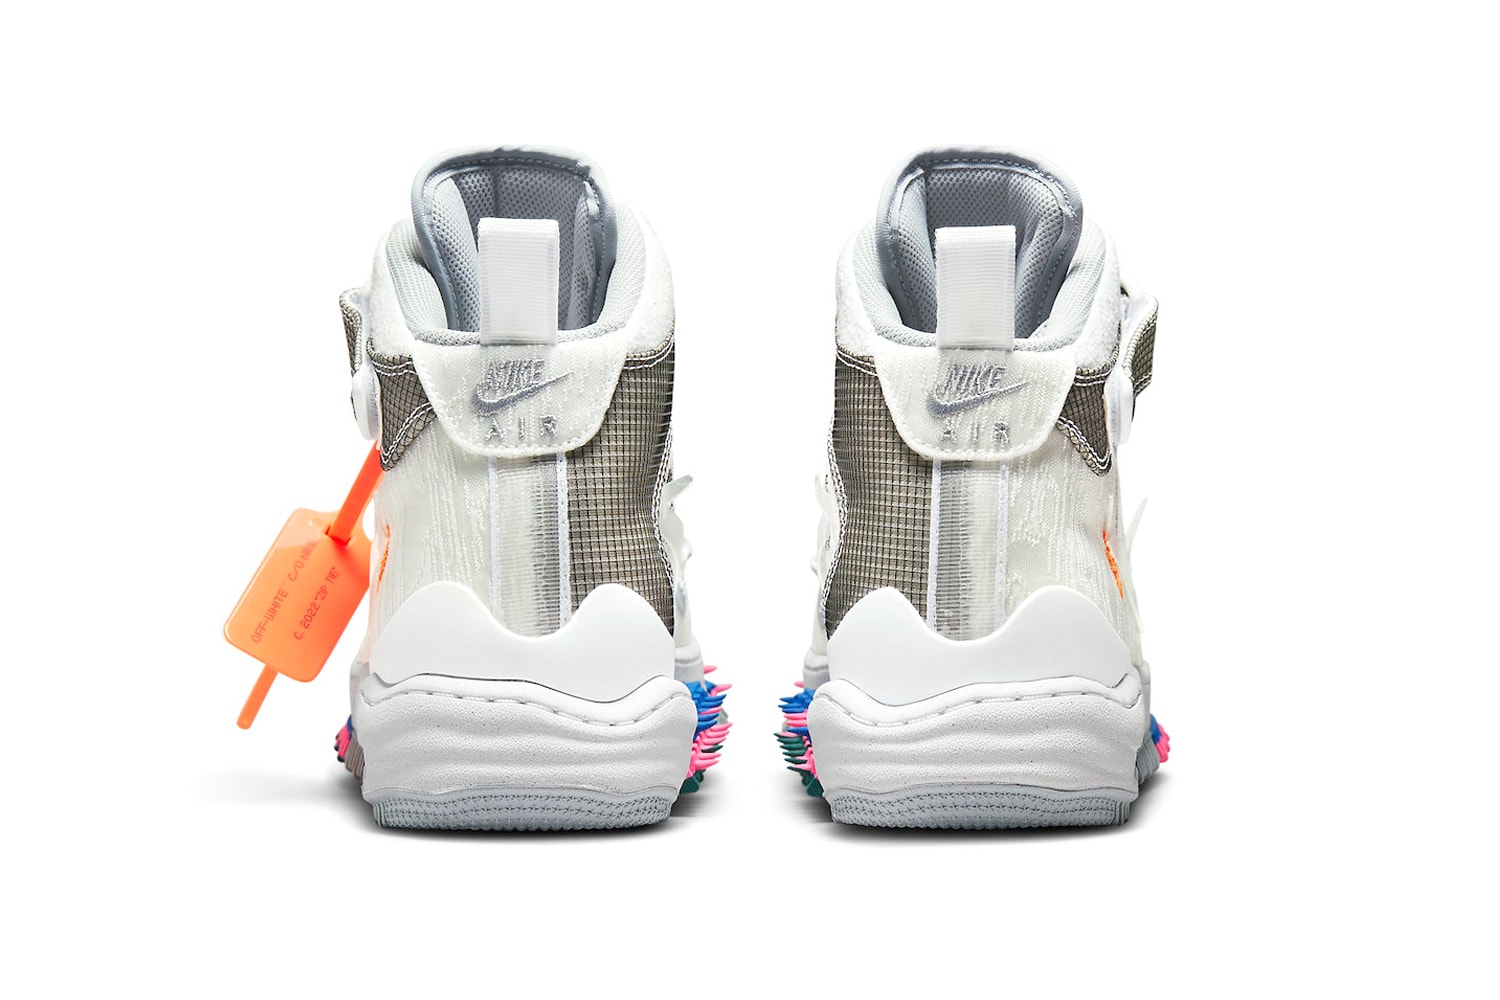 率先近賞 Off-White™ x Nike Air Force 1 Mid「White」聯乘鞋款官方圖輯